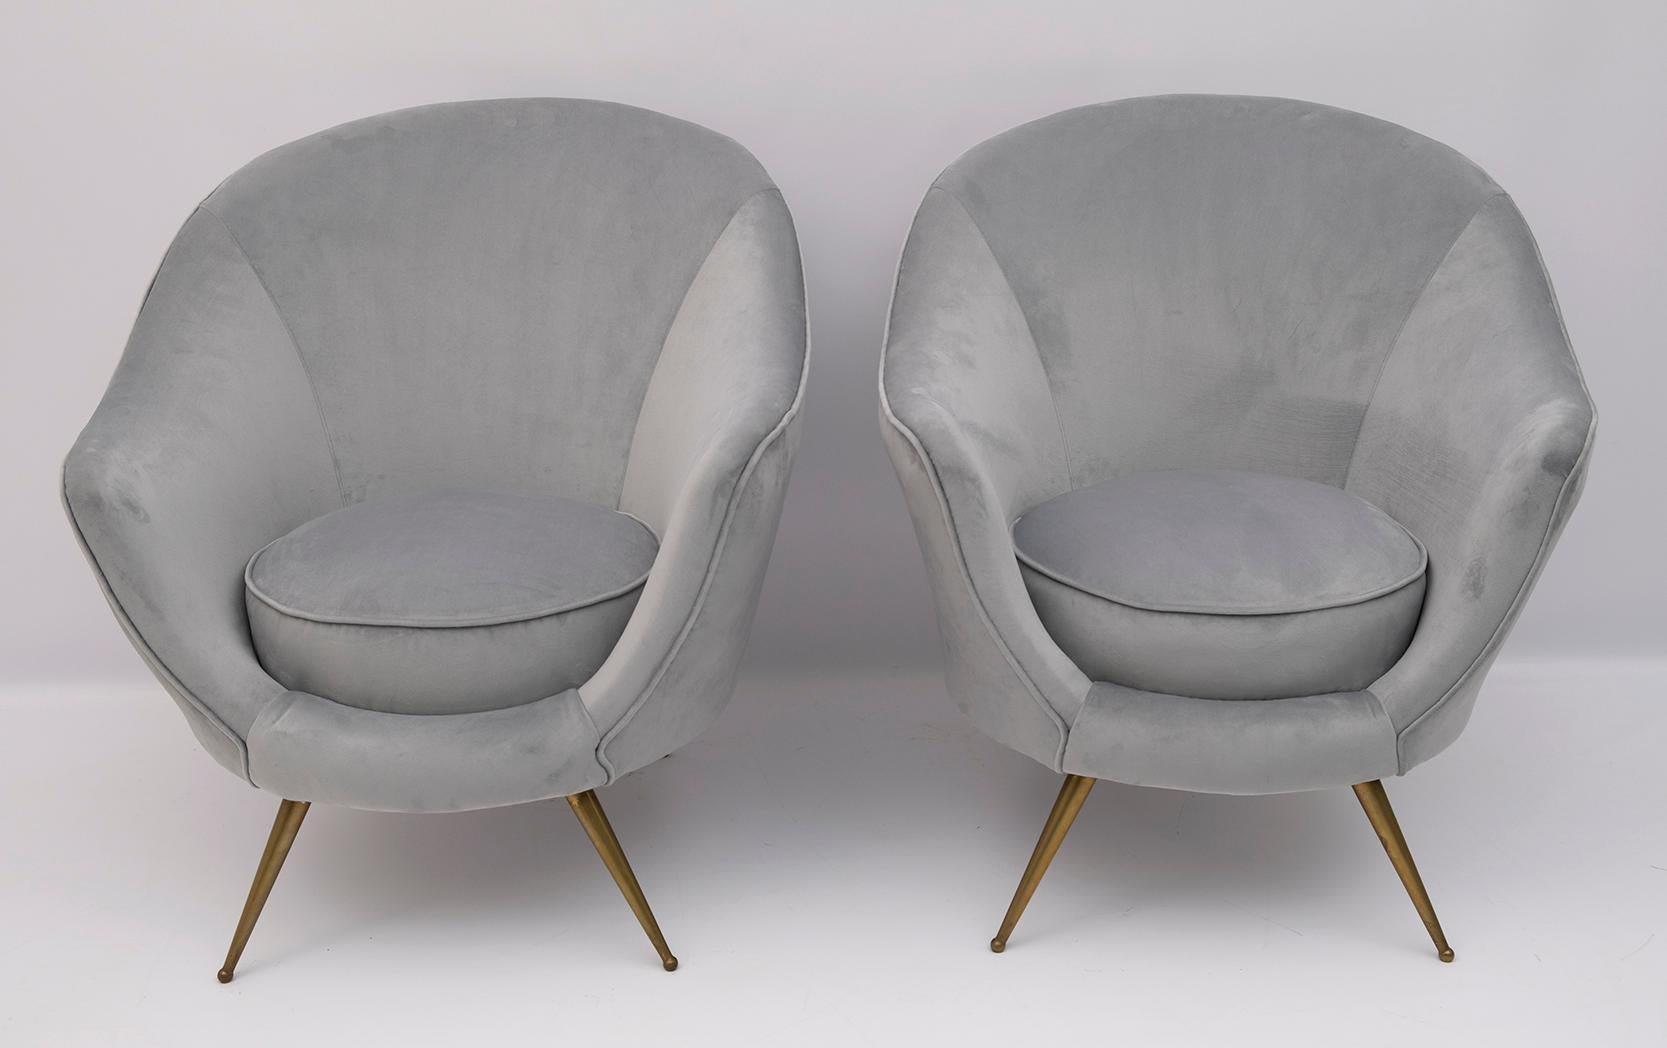 Belle paire de fauteuils conçue par Federico Munari au début des années 1950. La tapisserie a été refaite en velours.


Le canapé mesure cm : L 147 x P 85 x H 87 x S 42.